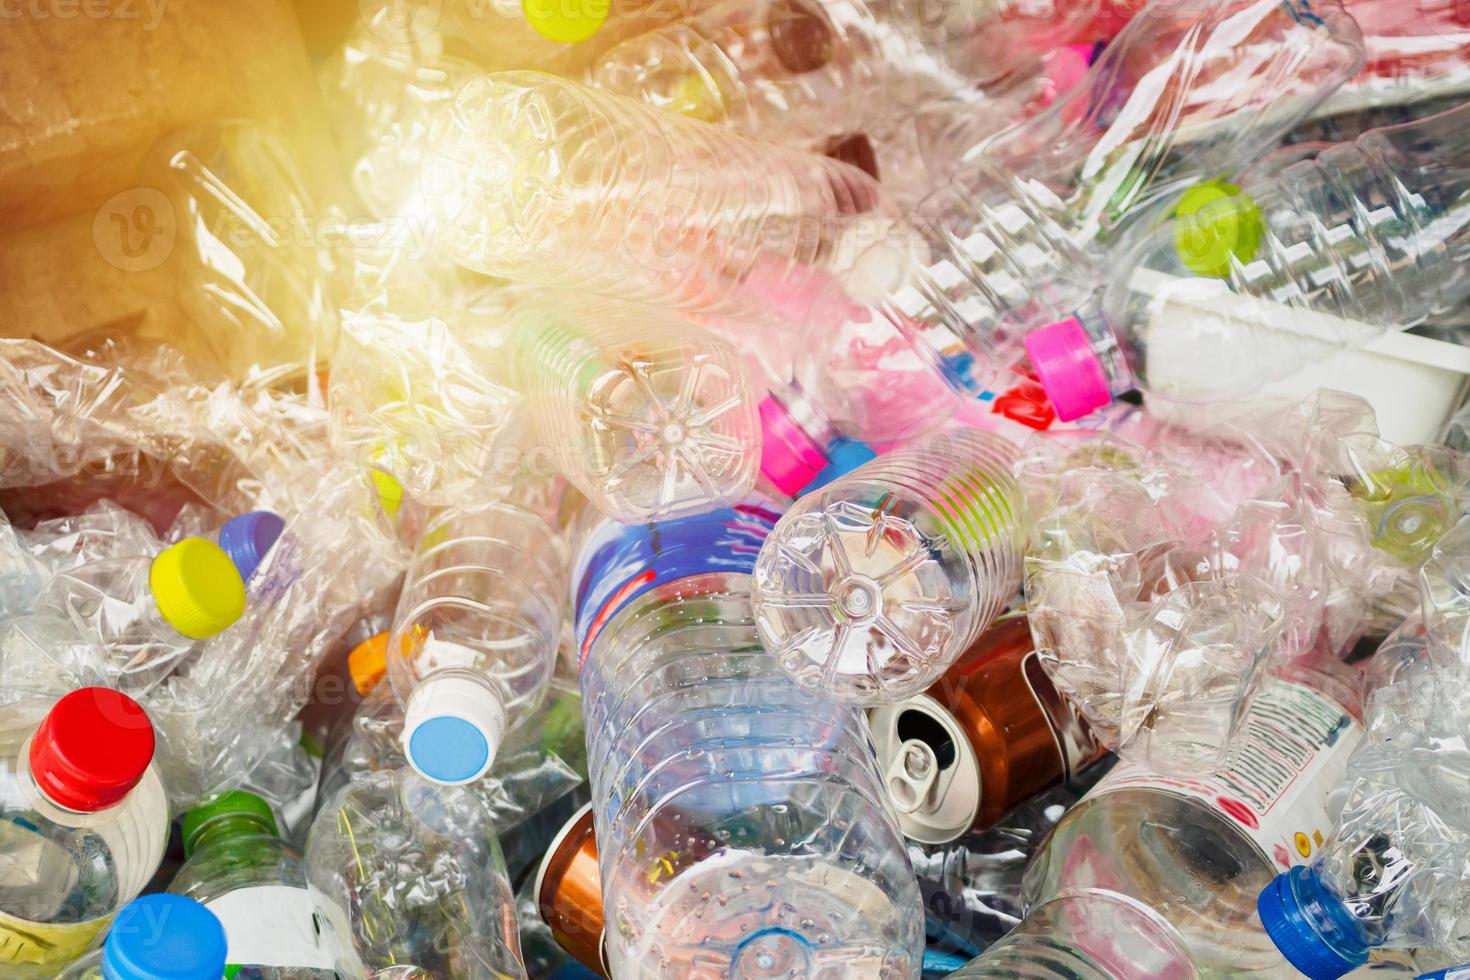 plastica bottiglie nel riciclare spazzatura stazione foto